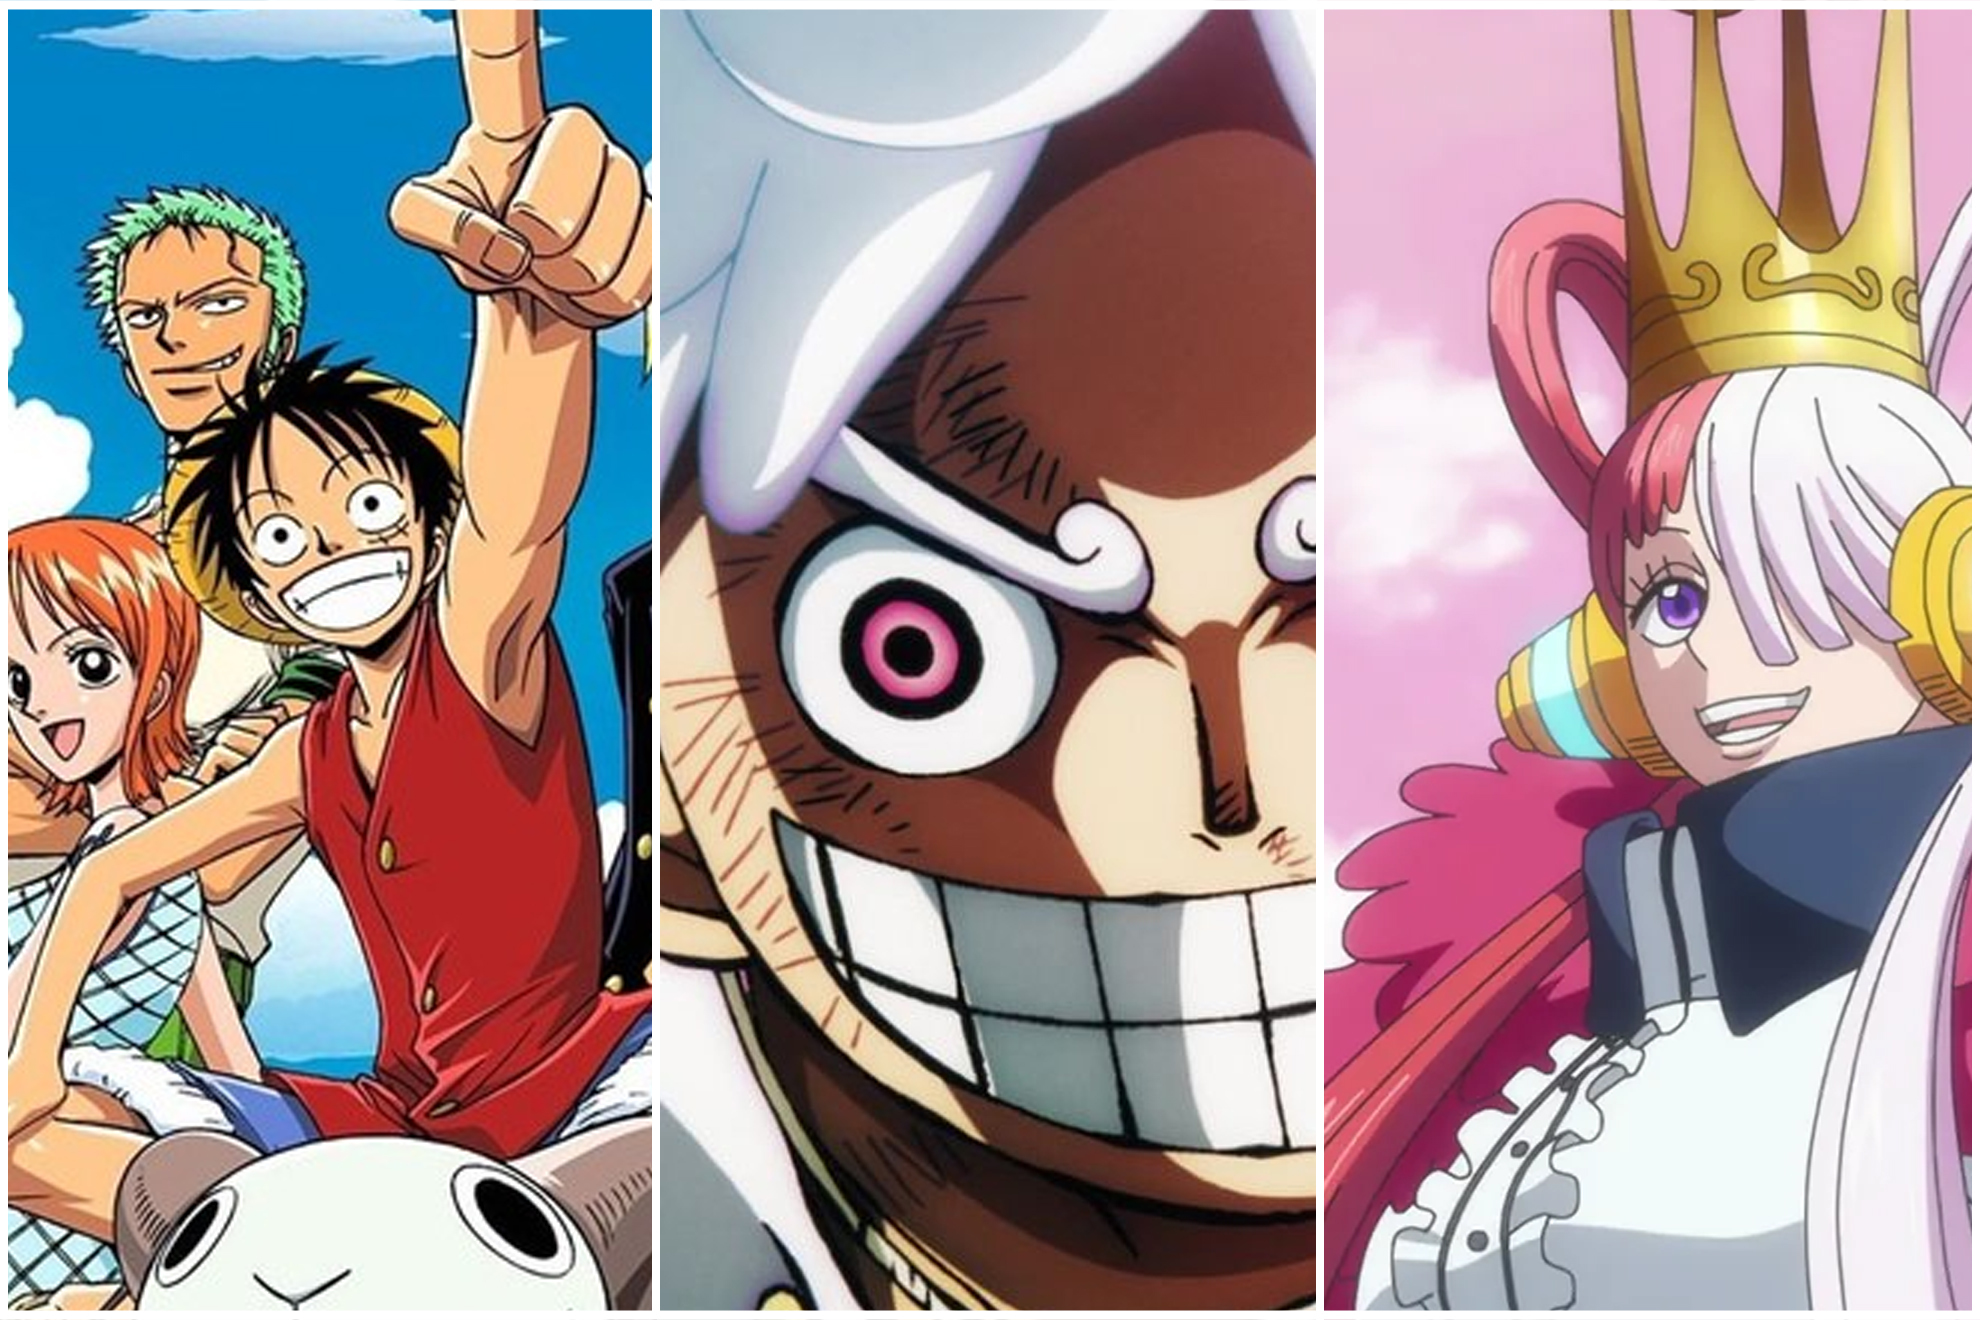 Cronolog�a de One Piece, �en qu� orden hay que ver el anime, las OVA y las pel�culas?